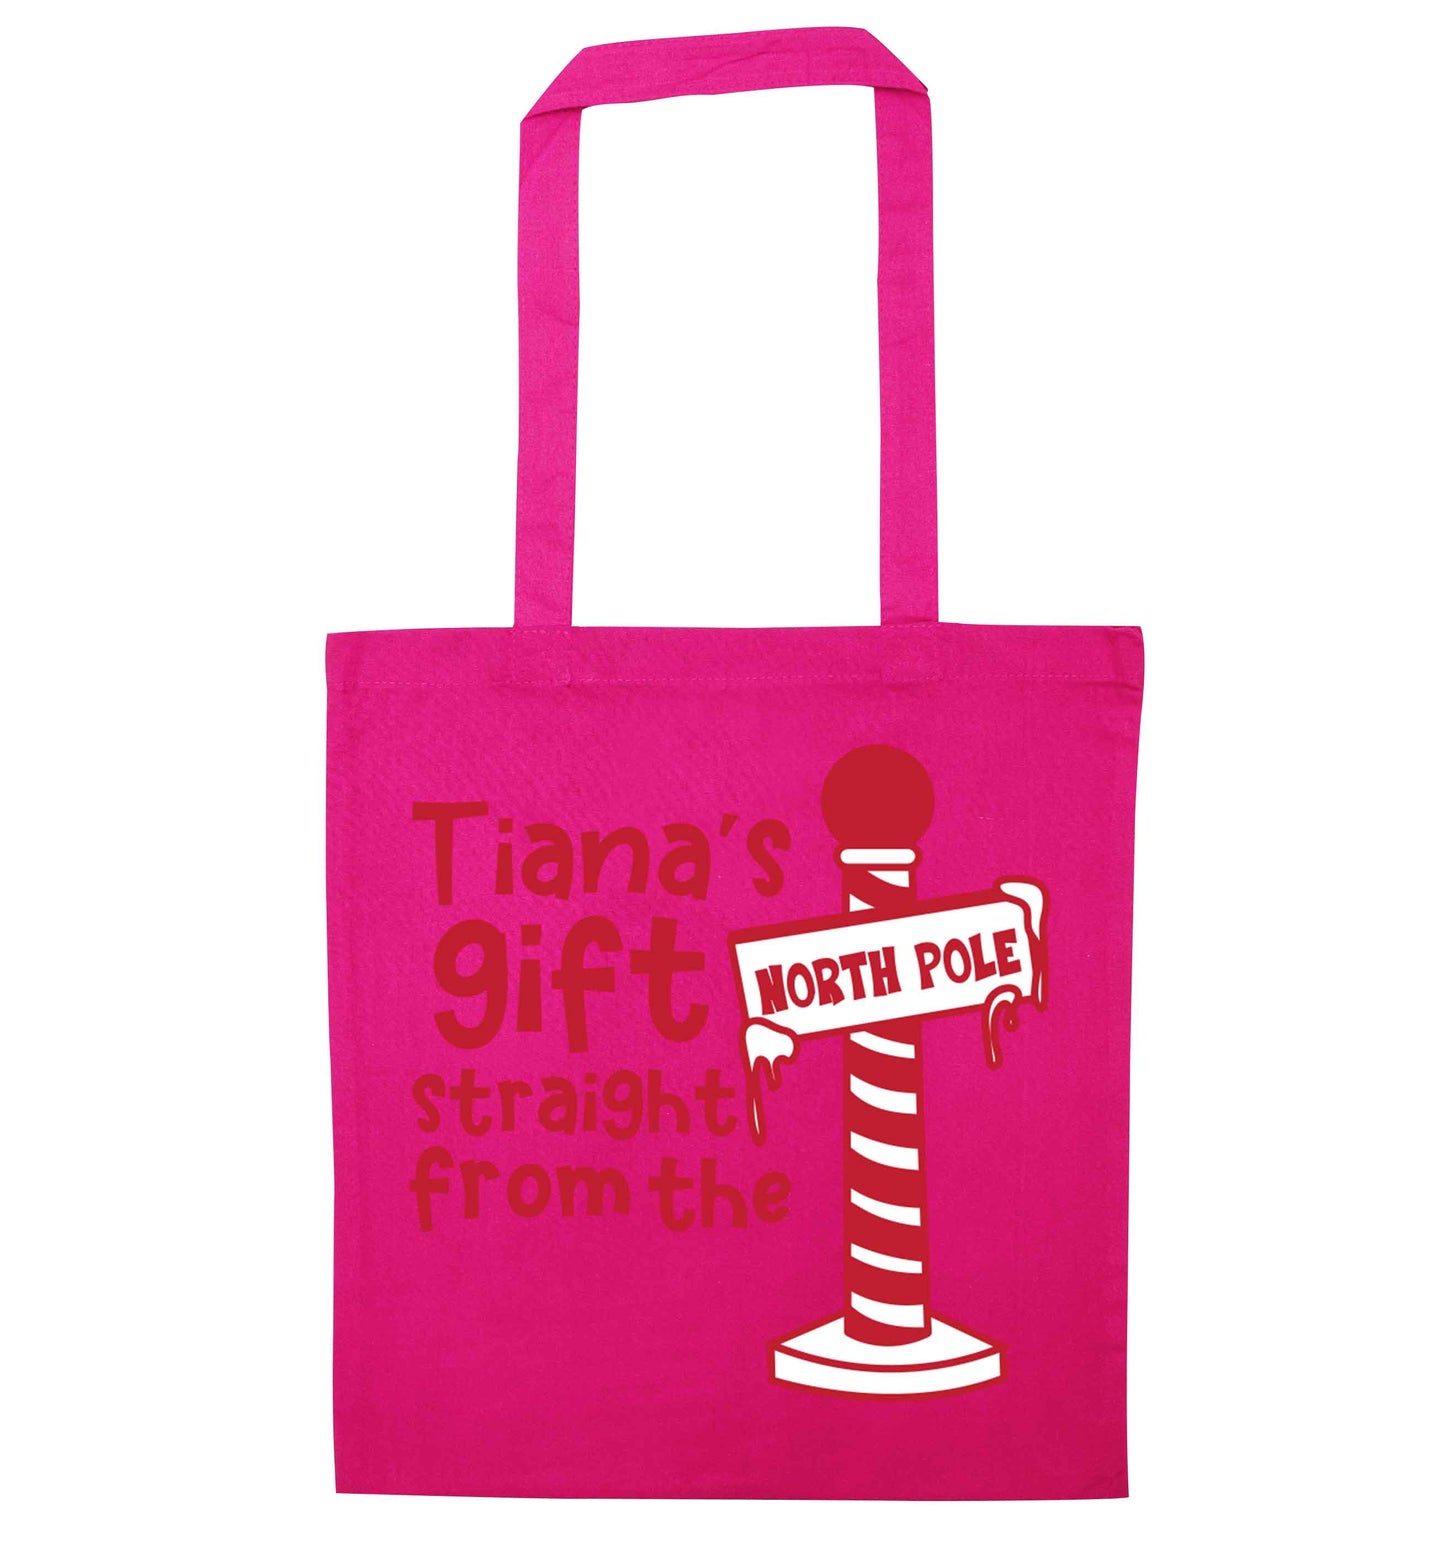 Merry Christmas pink tote bag